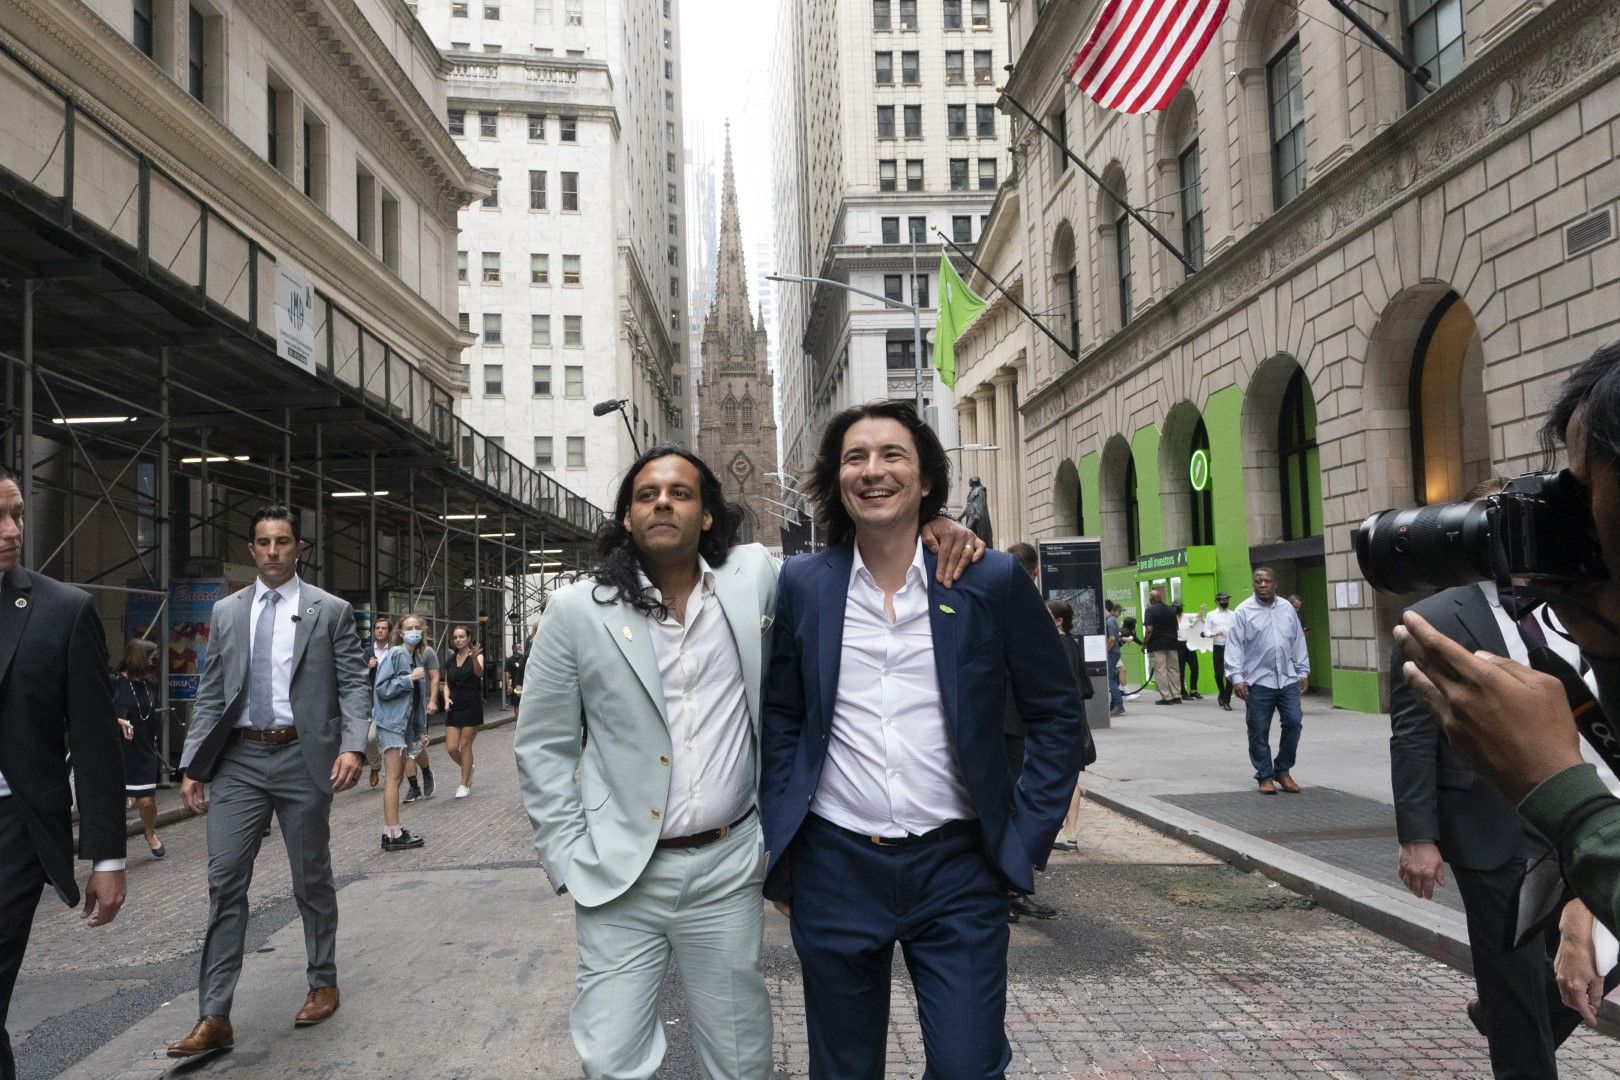 Байджу Бхат е сложил ръка на рамото на Владимир Тенев за снимка пред Нюйоркската фондова борса след IPO на тяхната компания в Nasdaq на 29 юли 2021 г. в Ню Йорк